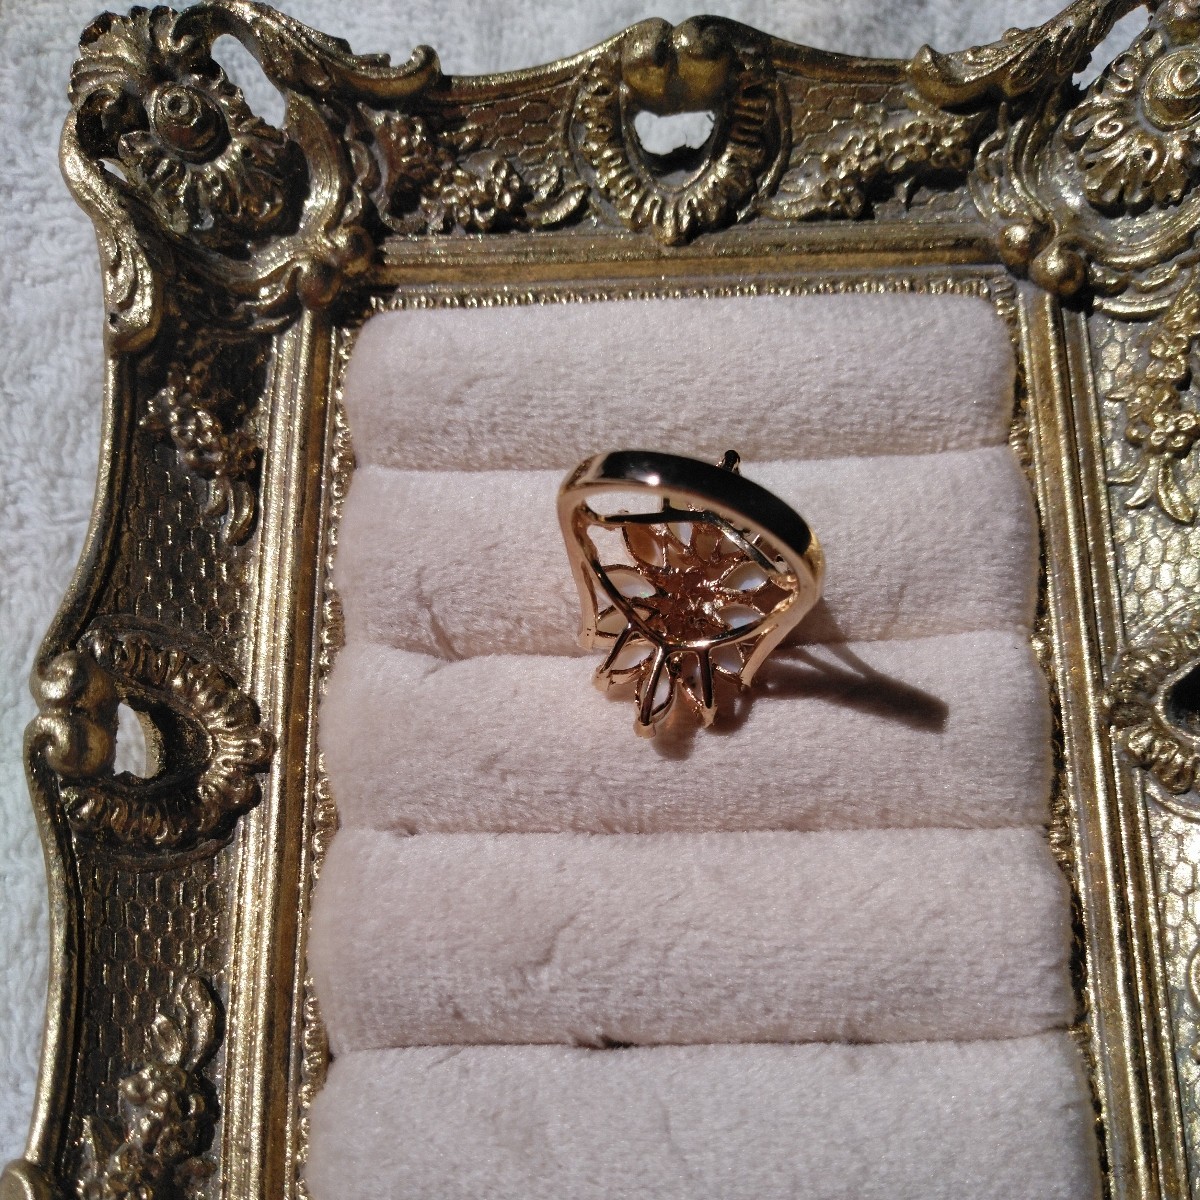 天然石 オパール リング 指輪 18K金張り(18kgf) 綺麗な遊食 サイズ10号くらい 石 リーフ型のオパールx12、ジルコニアx3_裏側です